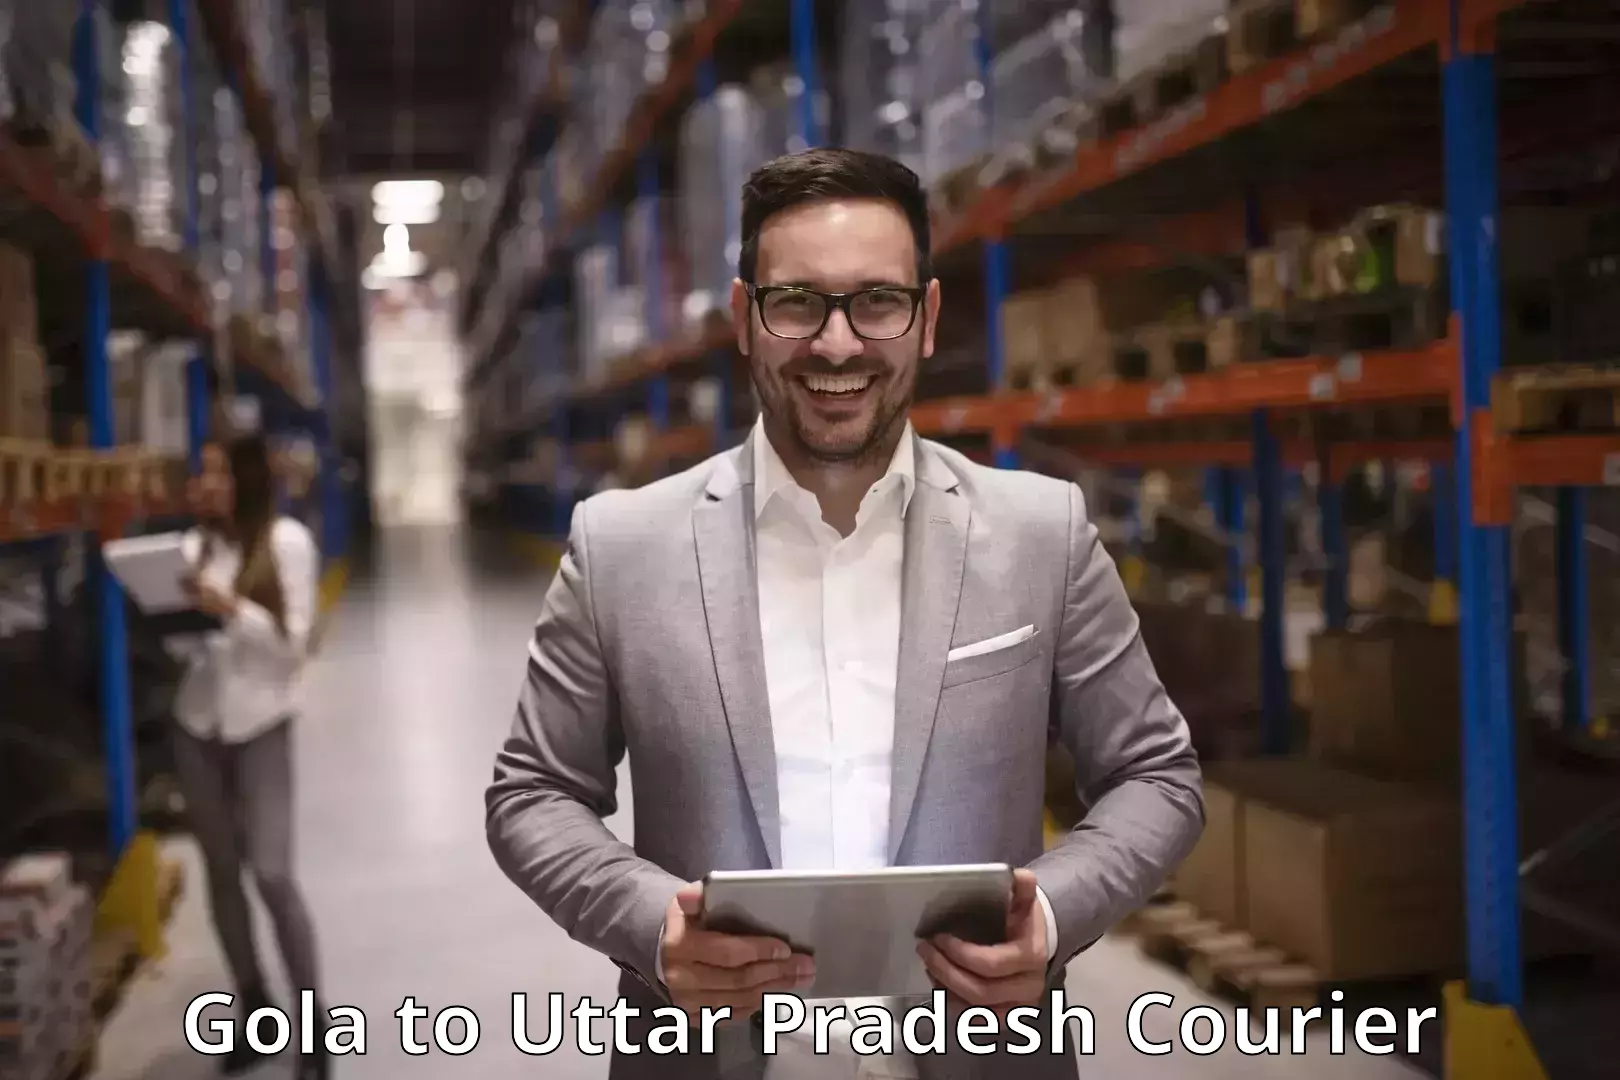 Supply chain efficiency Gola to Uttar Pradesh